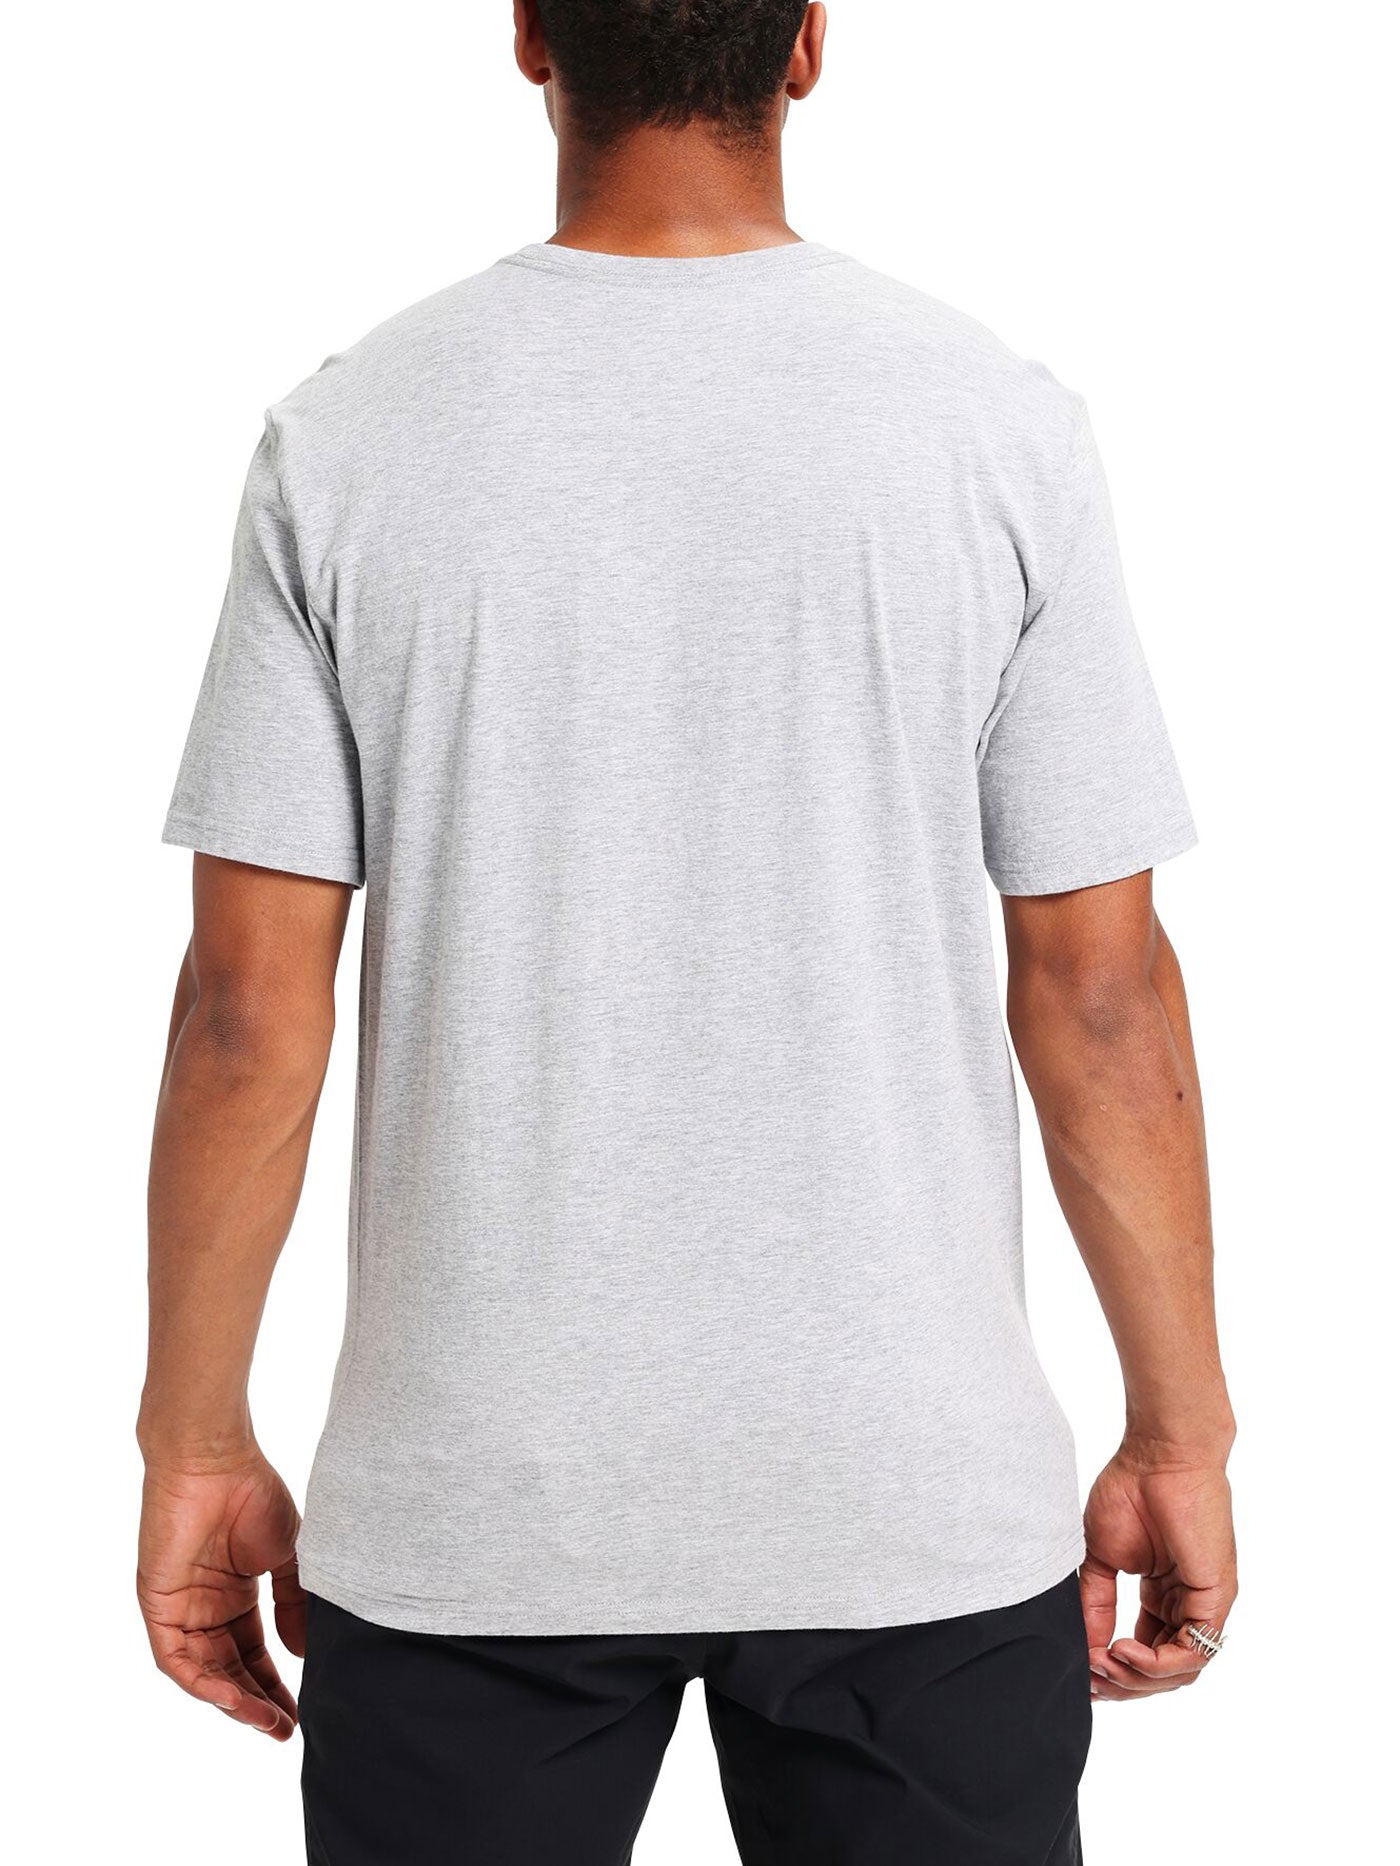 Burton Classic Mountain High T-Shirt